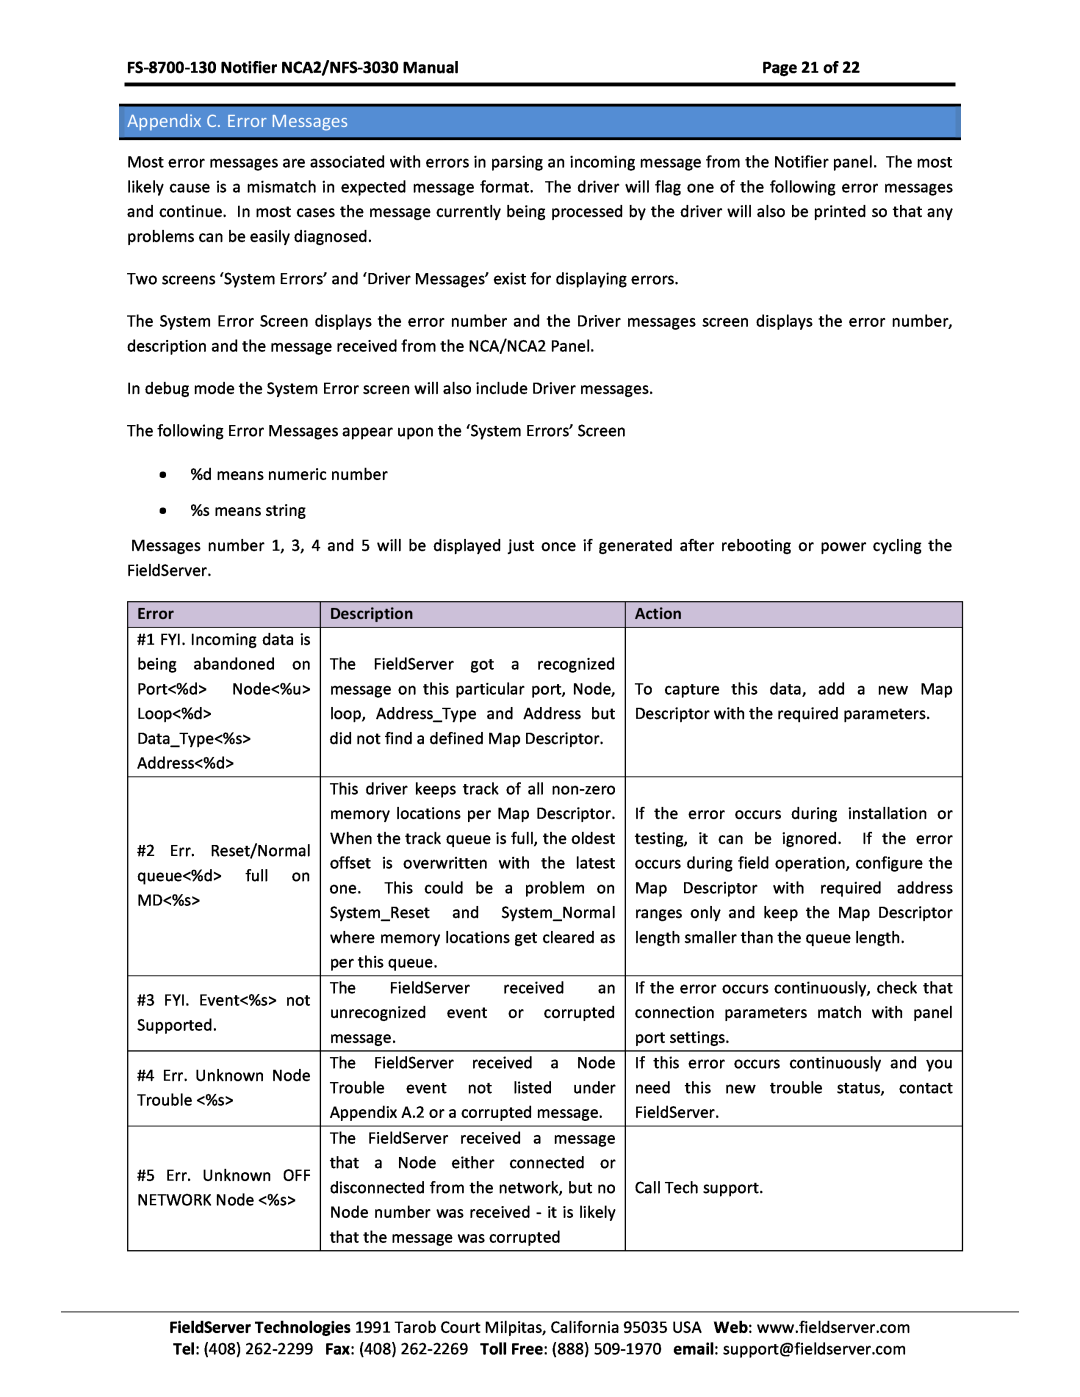 FieldServer NCA2-NFS2-3030, FS-8700-130 instruction manual Appendix C. Error Messages, Page 21 of, Description, Action 